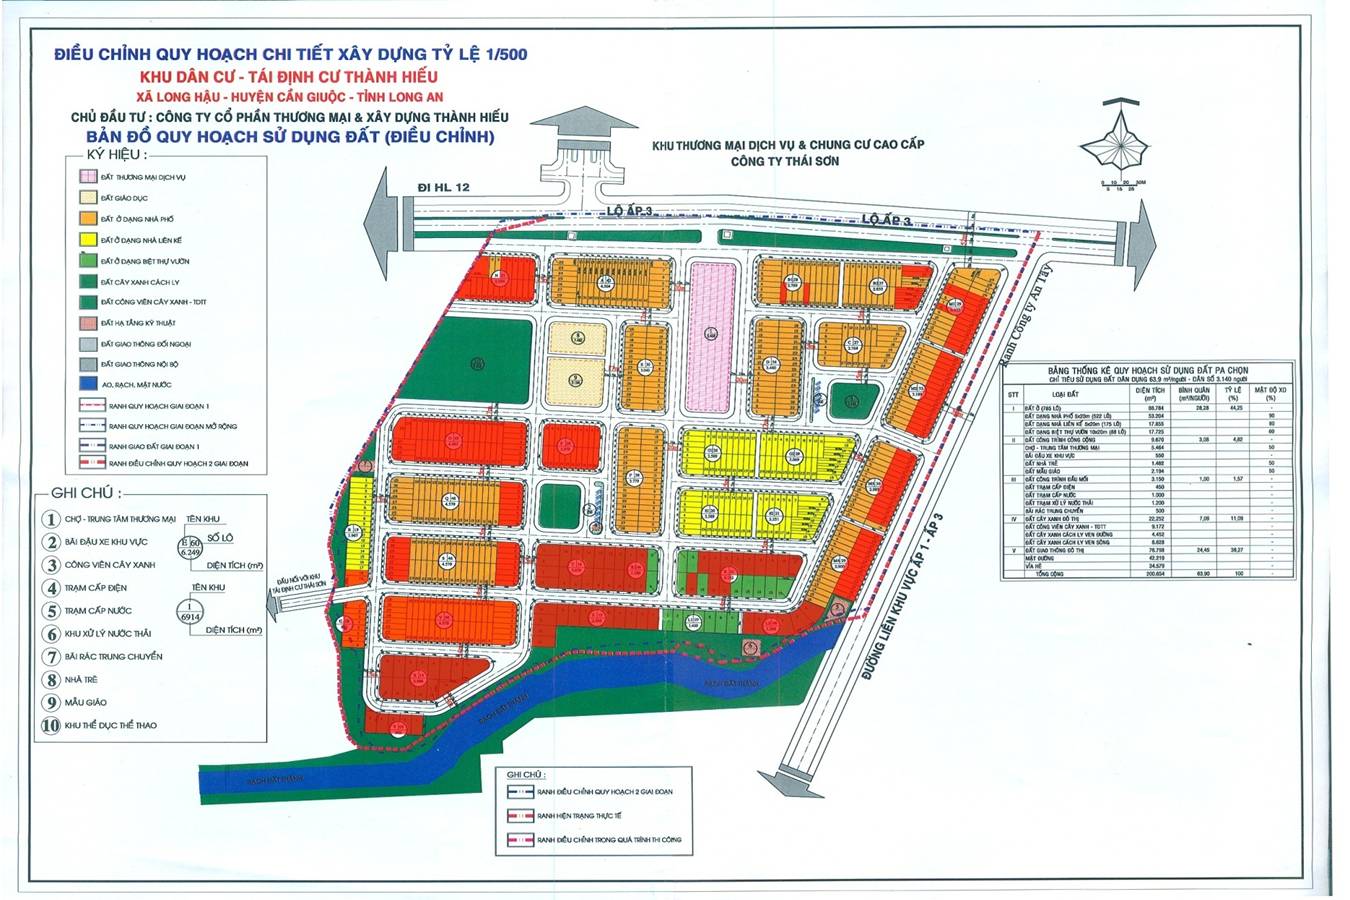 Bản đồ dự án khu tái định cư Thành Hiếu